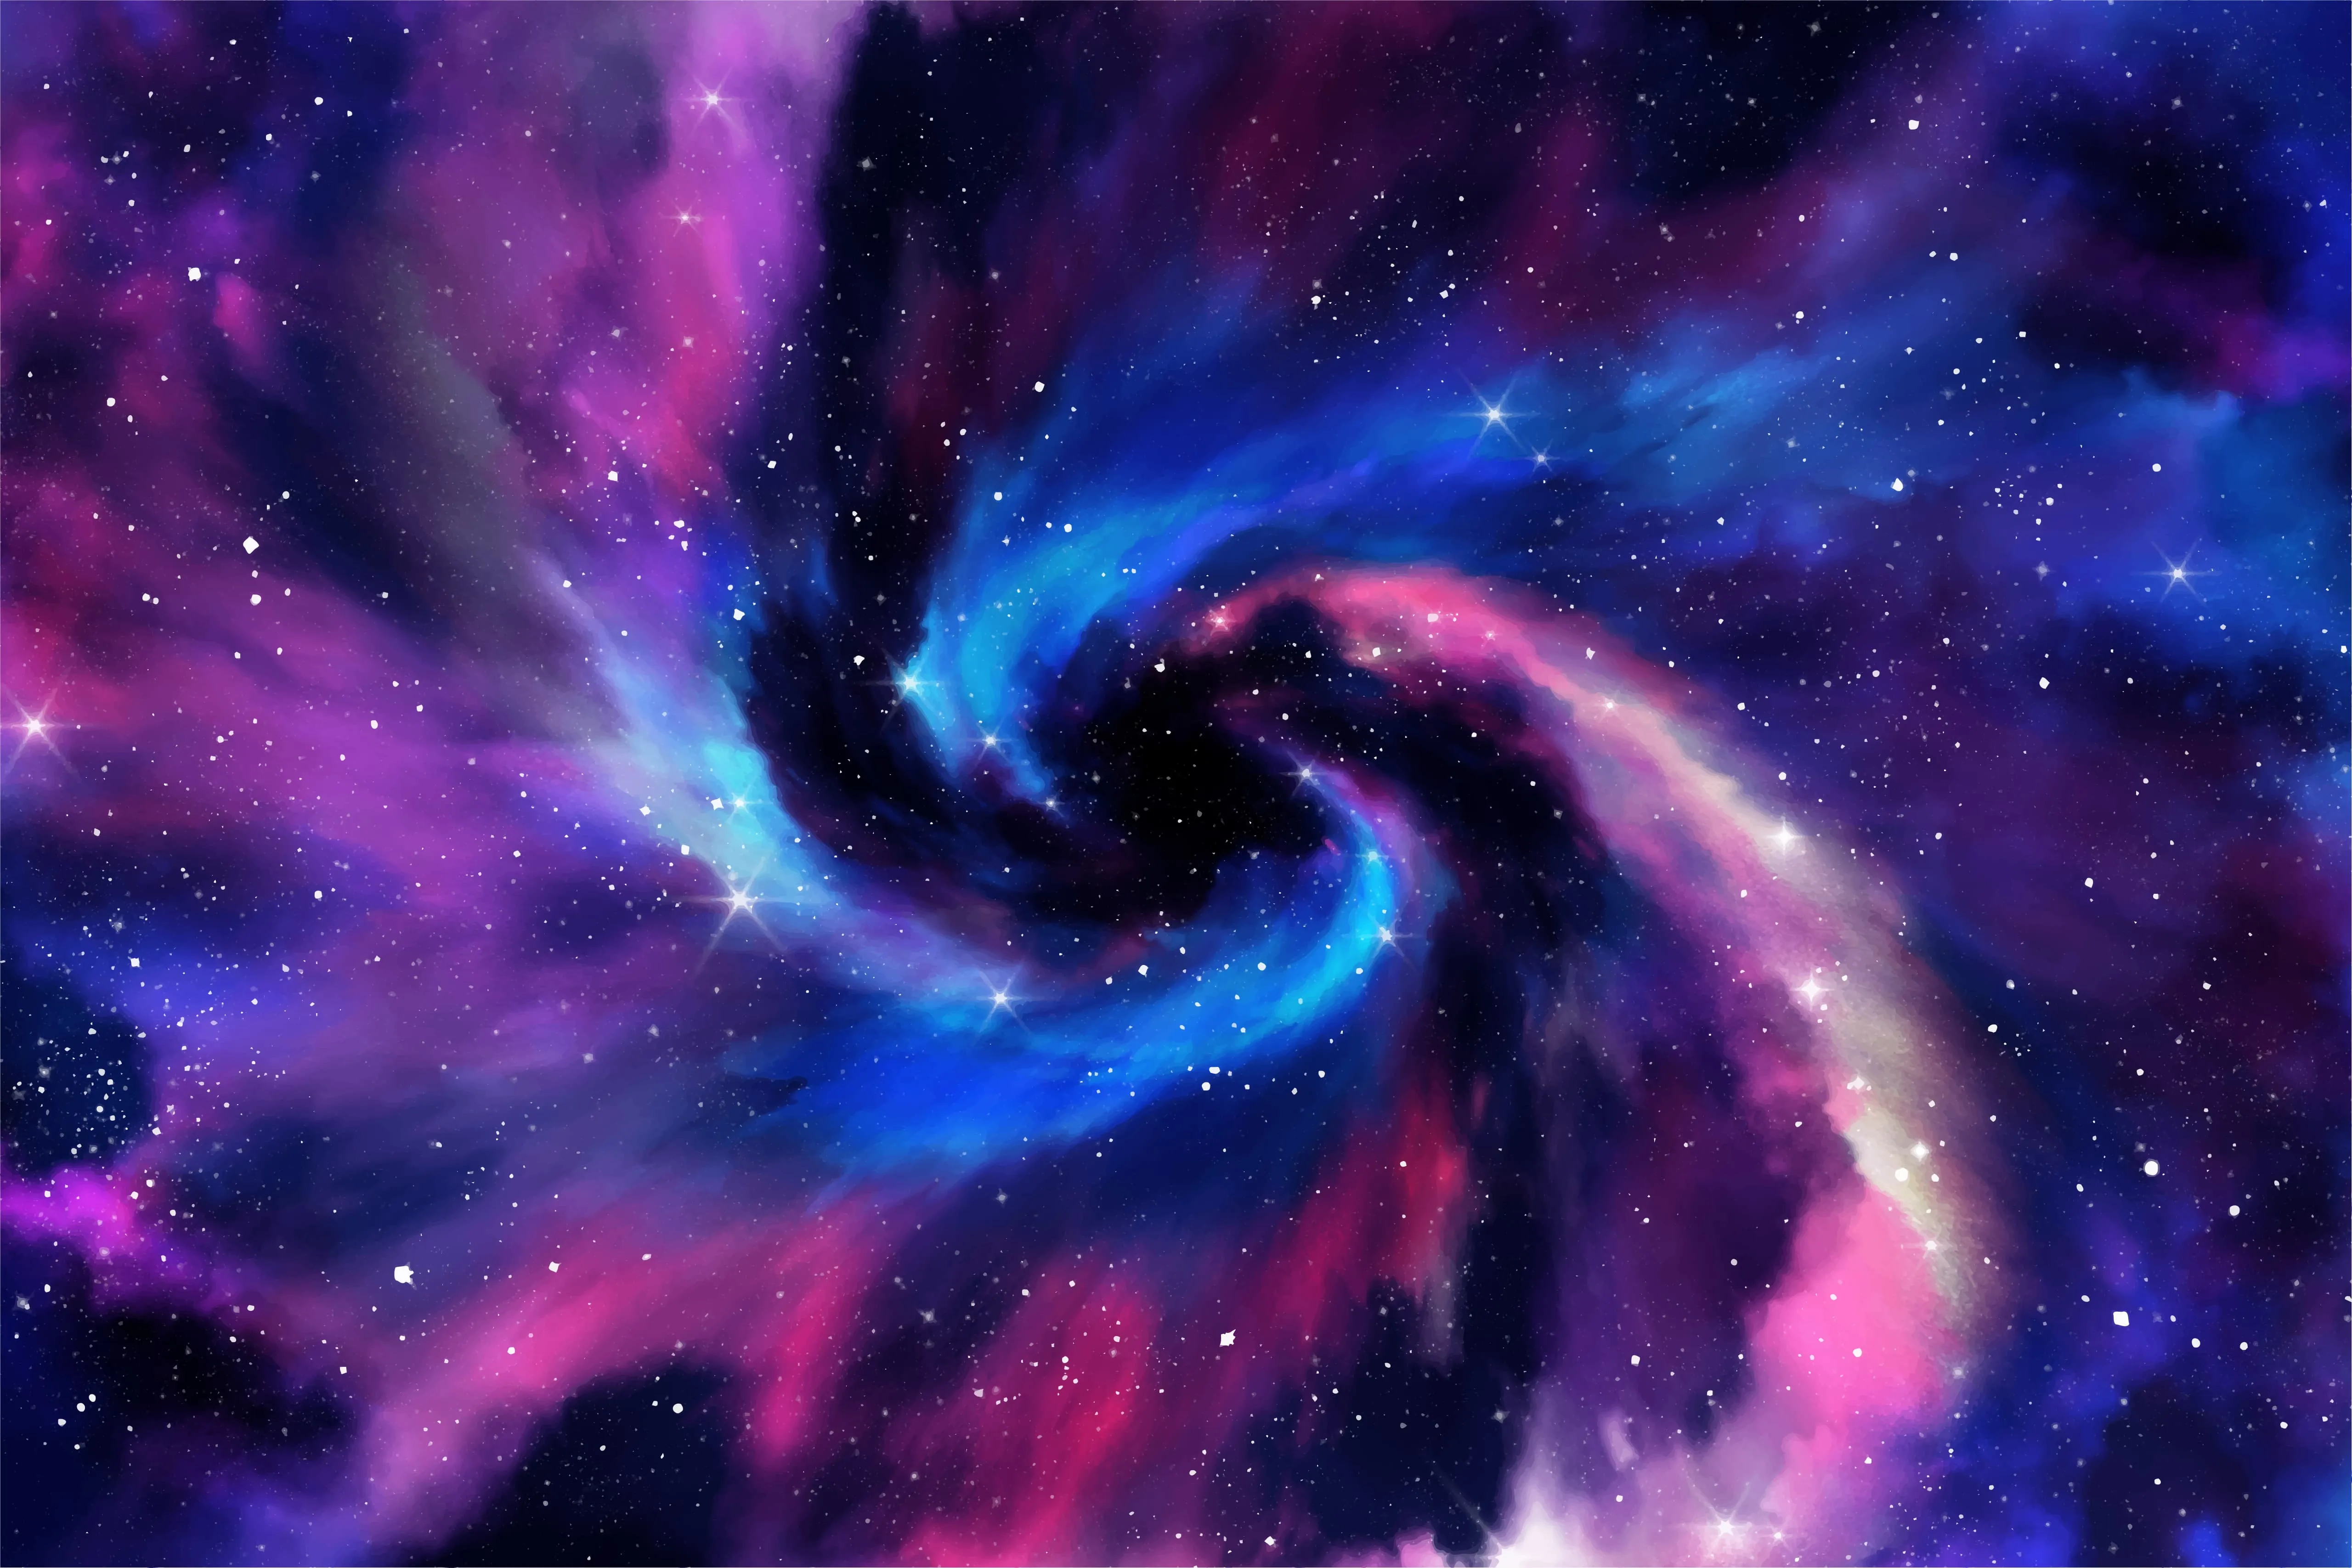 Символіка та логотип ROG Nebula HDR на синьо-фіолетовому фоні з космічною тематикою.